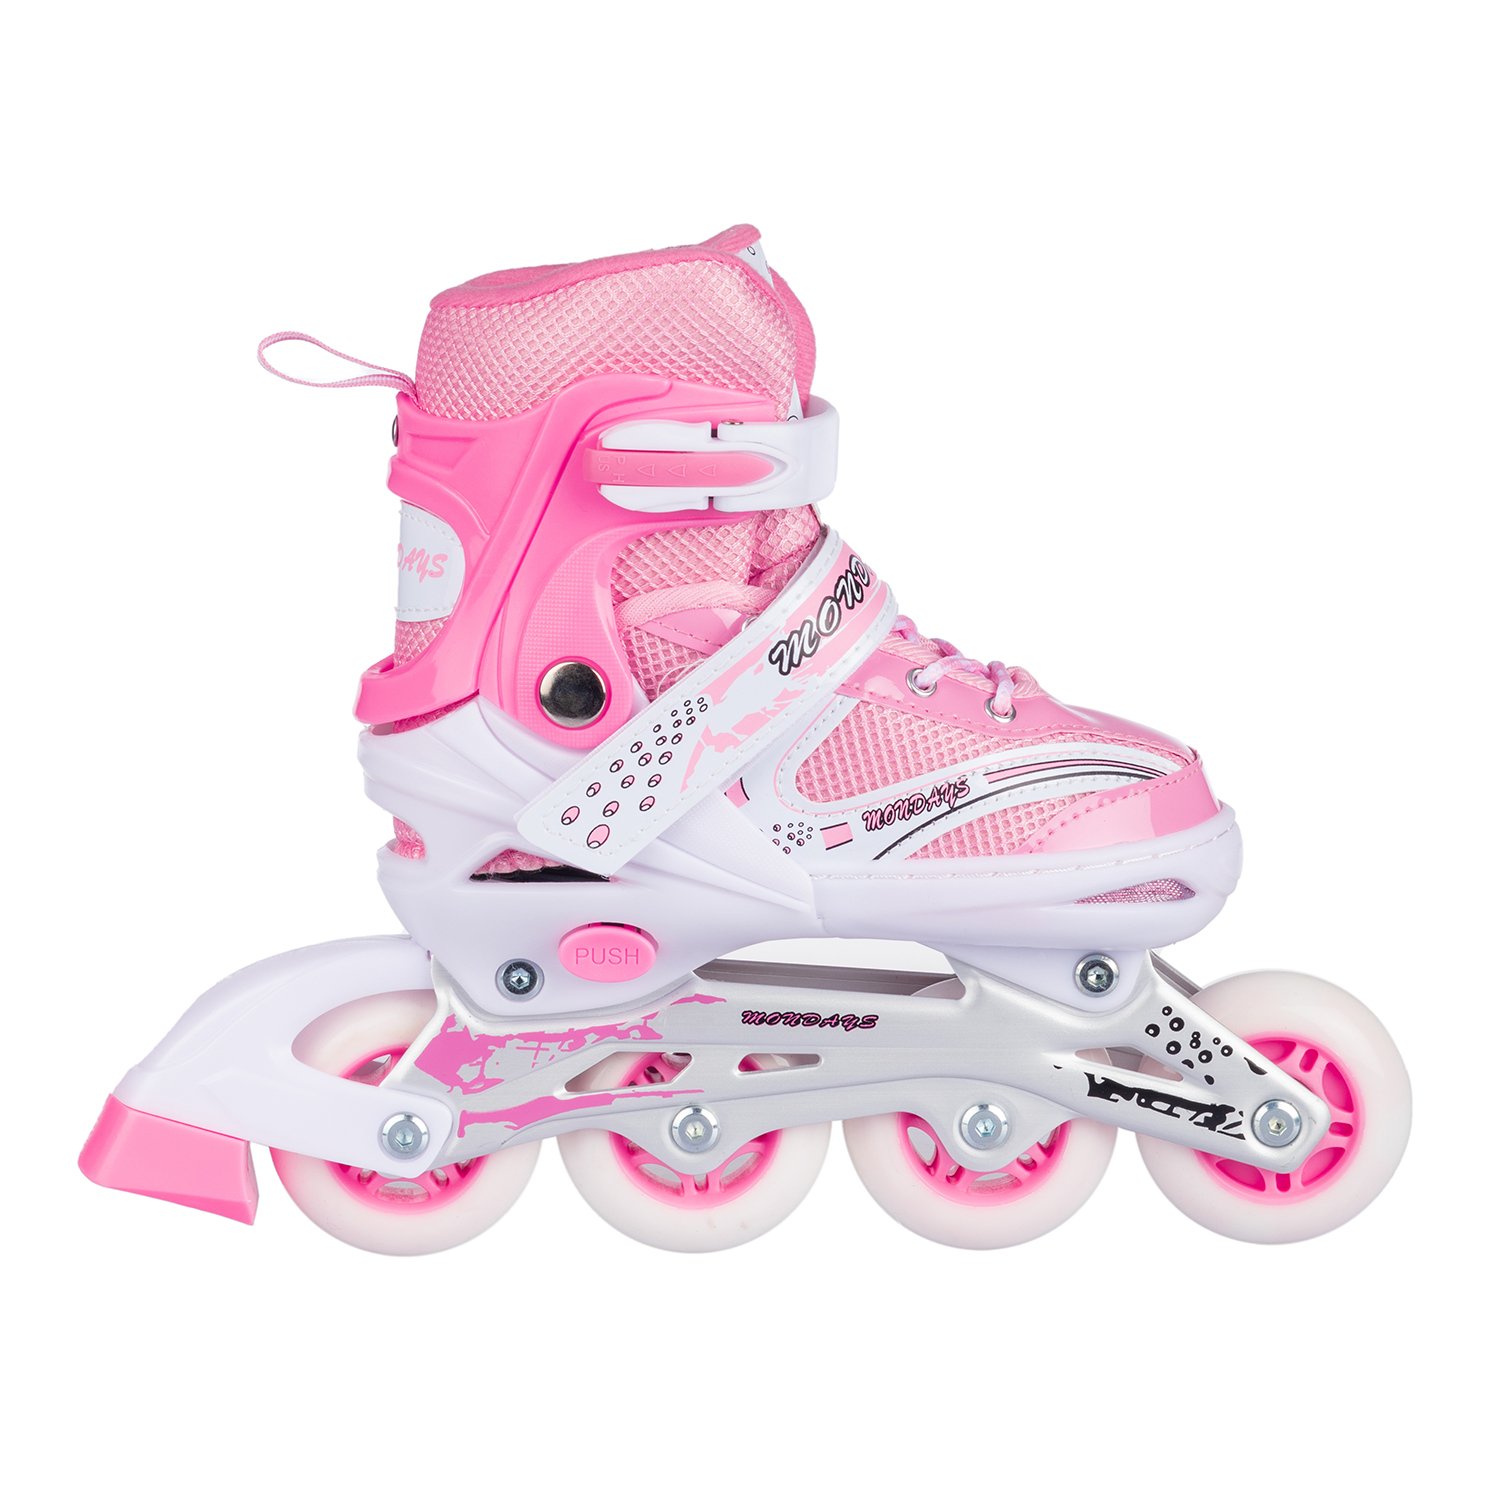 Роликовые коньки BABY STYLE розовые раздвижные размер с 32 по 35M светящиеся колеса - фото 6